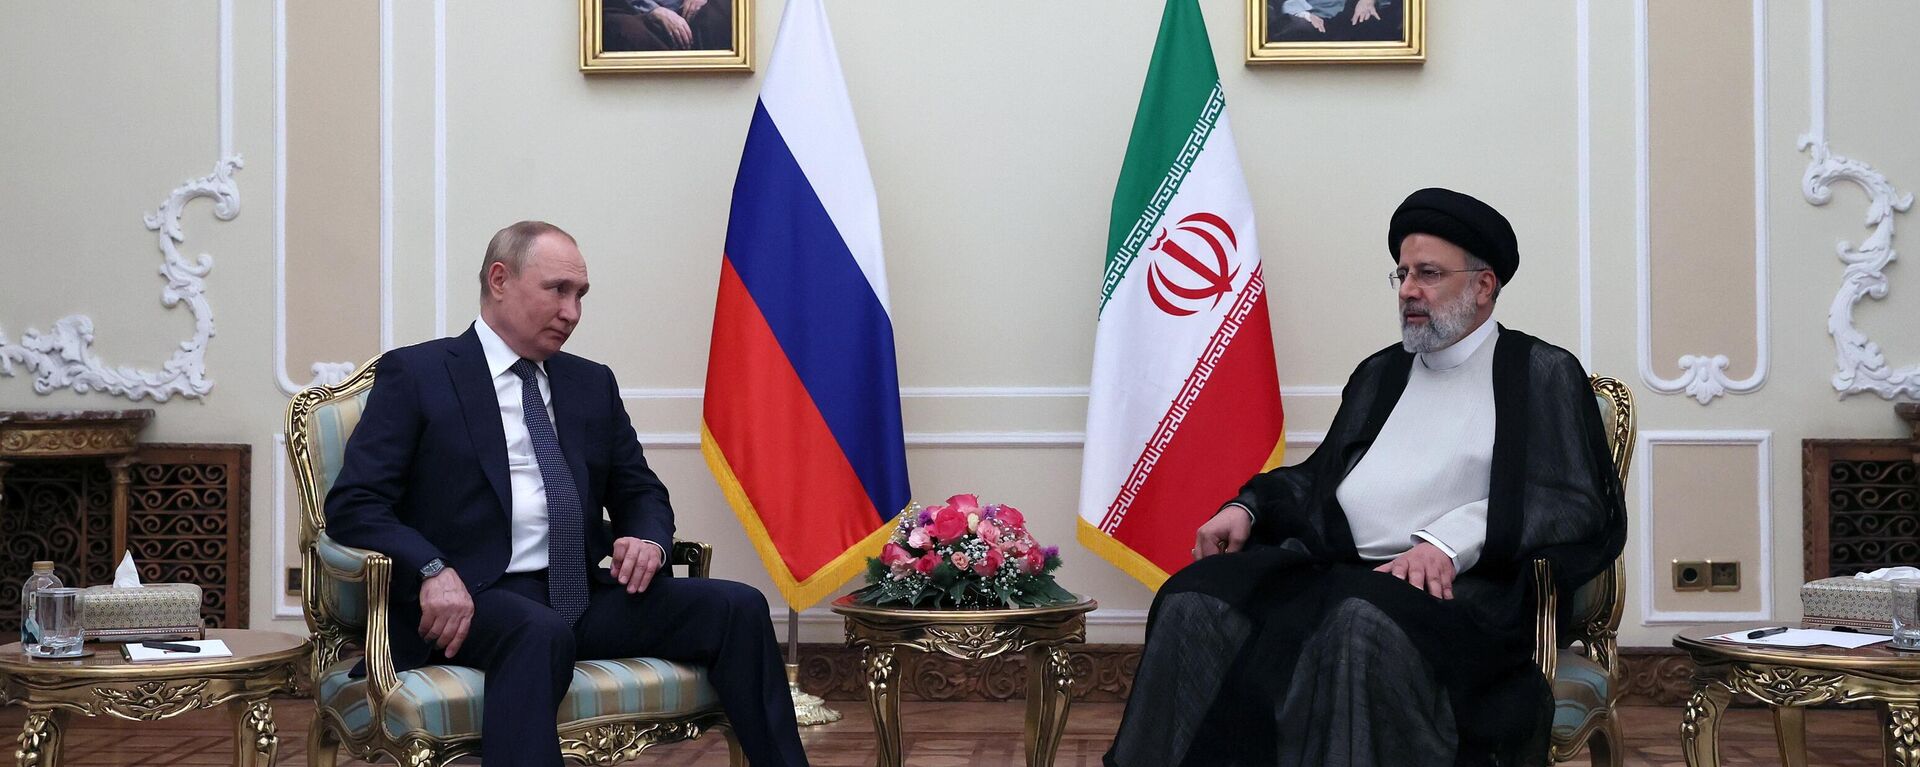 Rusya lideri Putin ve İranlı mevkidaşı Reisi arasındaki görüşmenin başladığı bildirildi. - Sputnik Türkiye, 1920, 19.07.2022